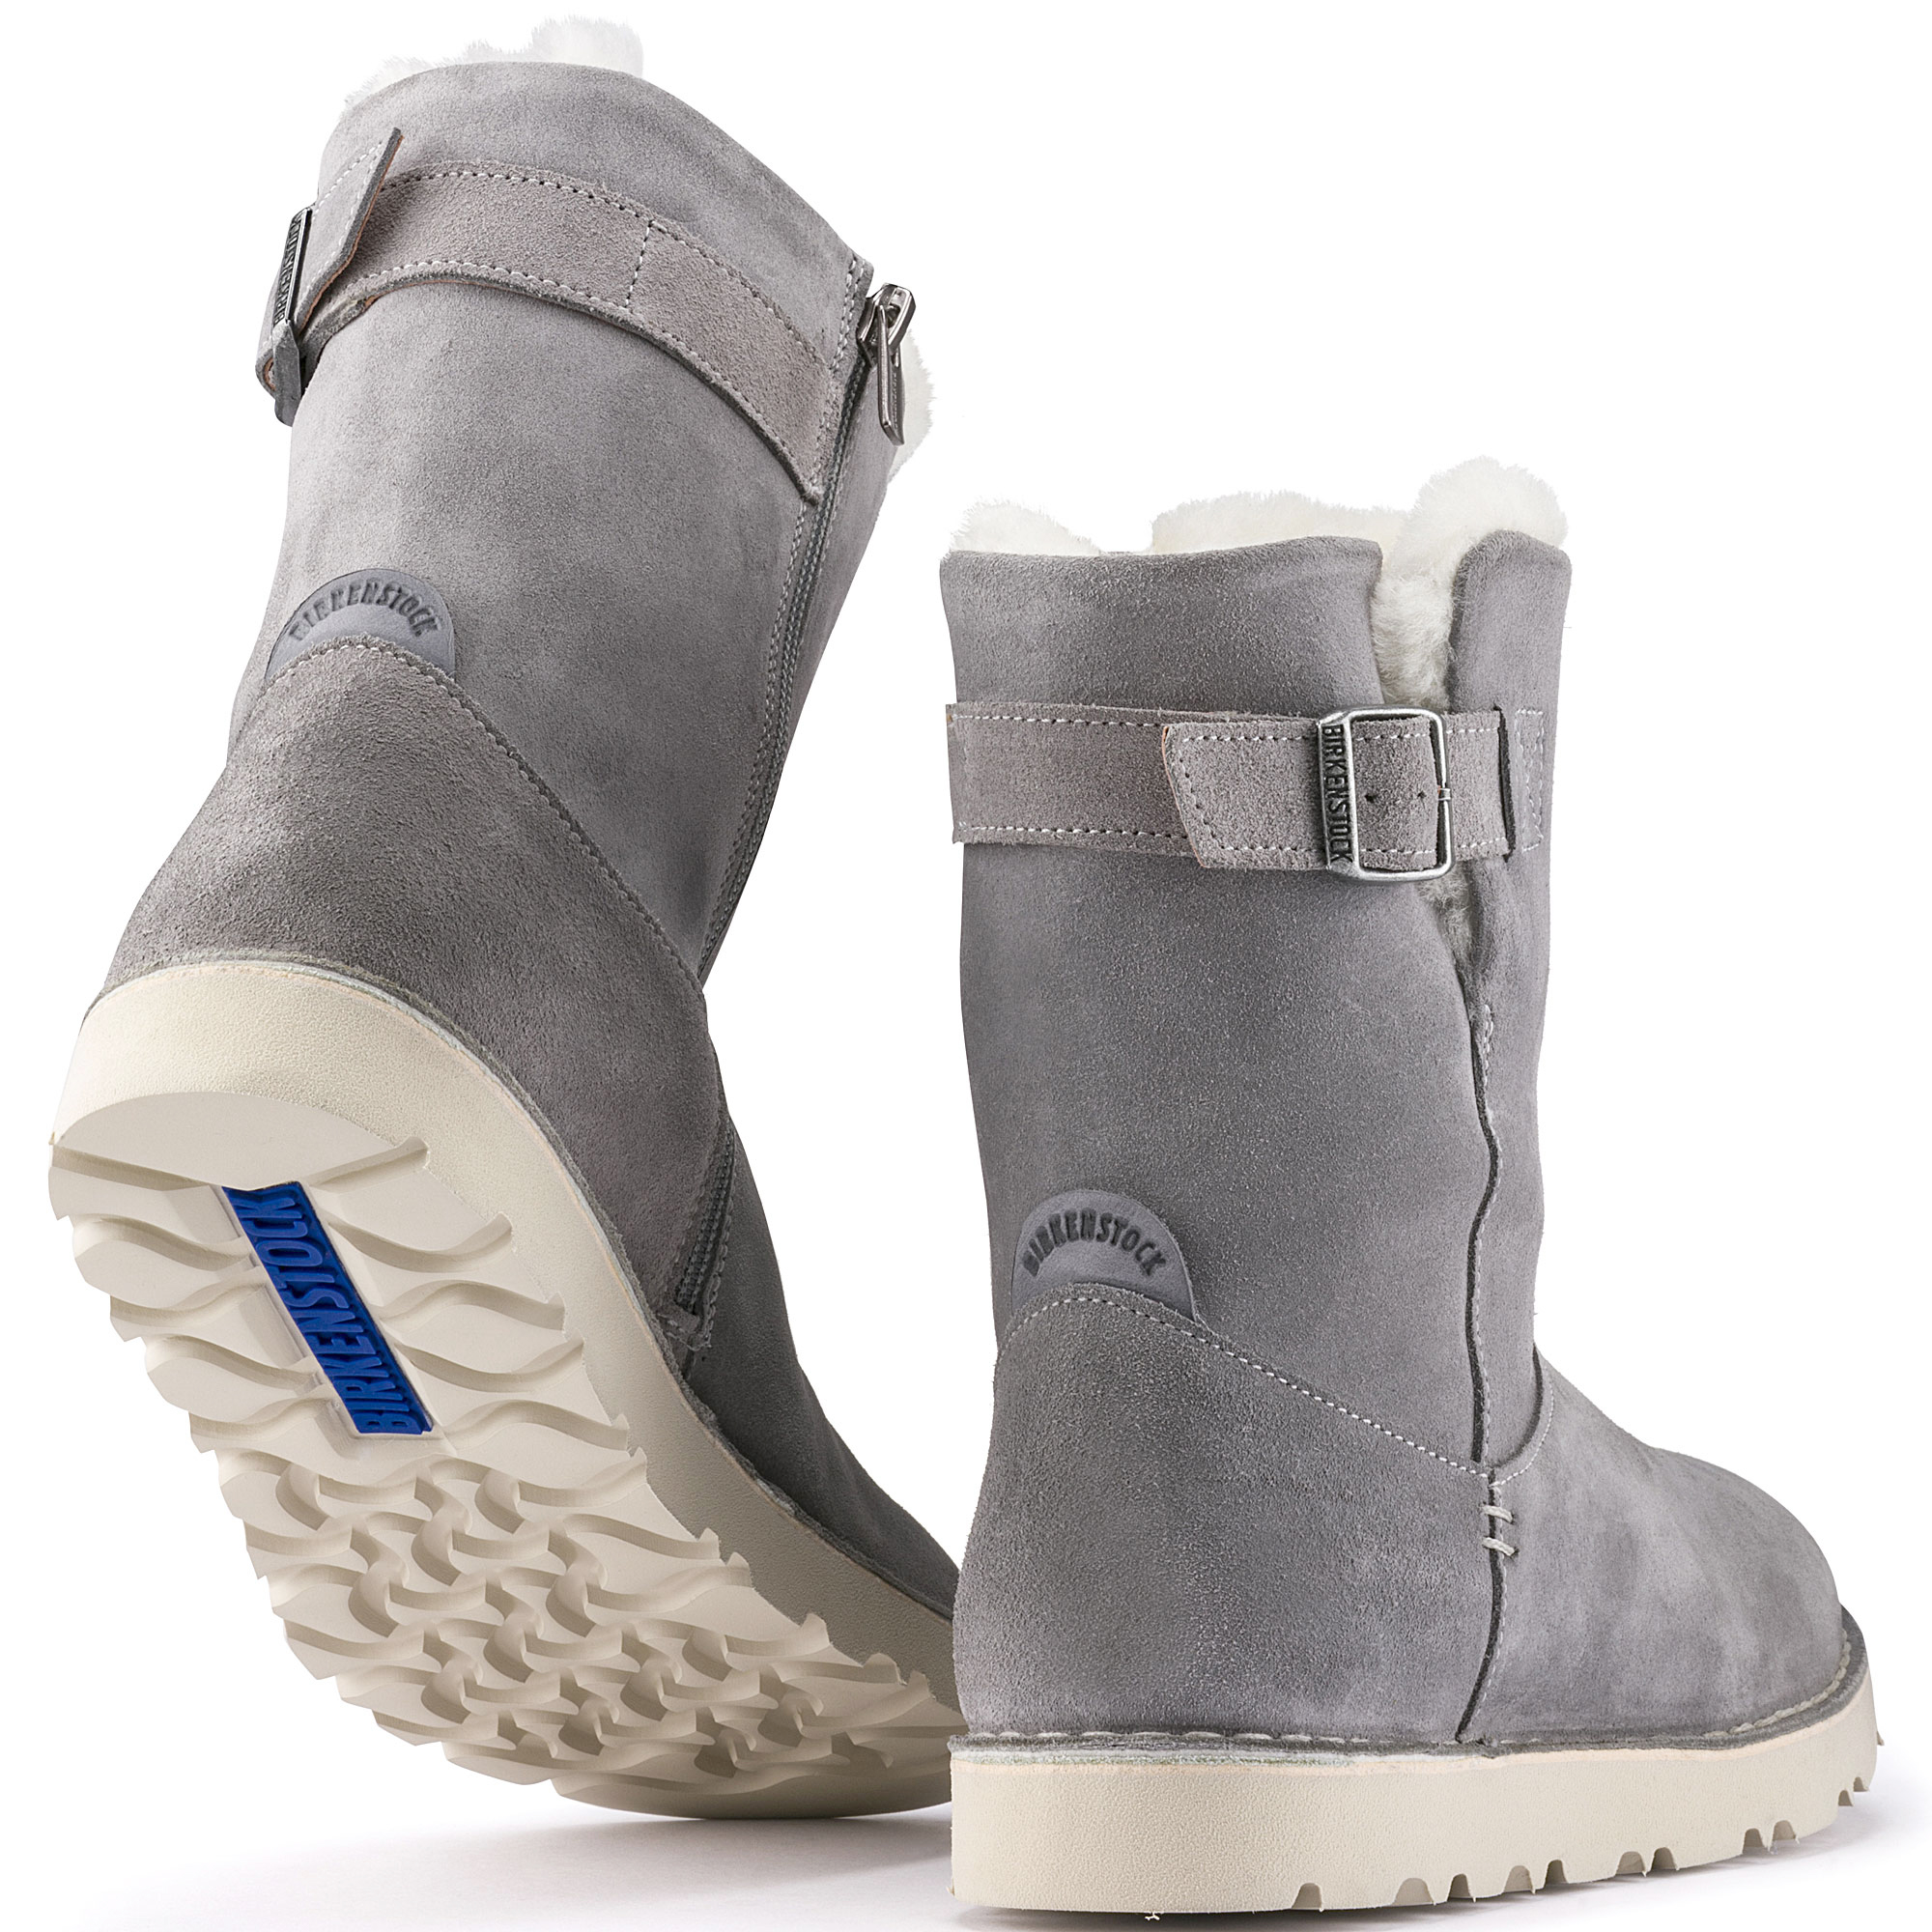 birkenstock snow boots